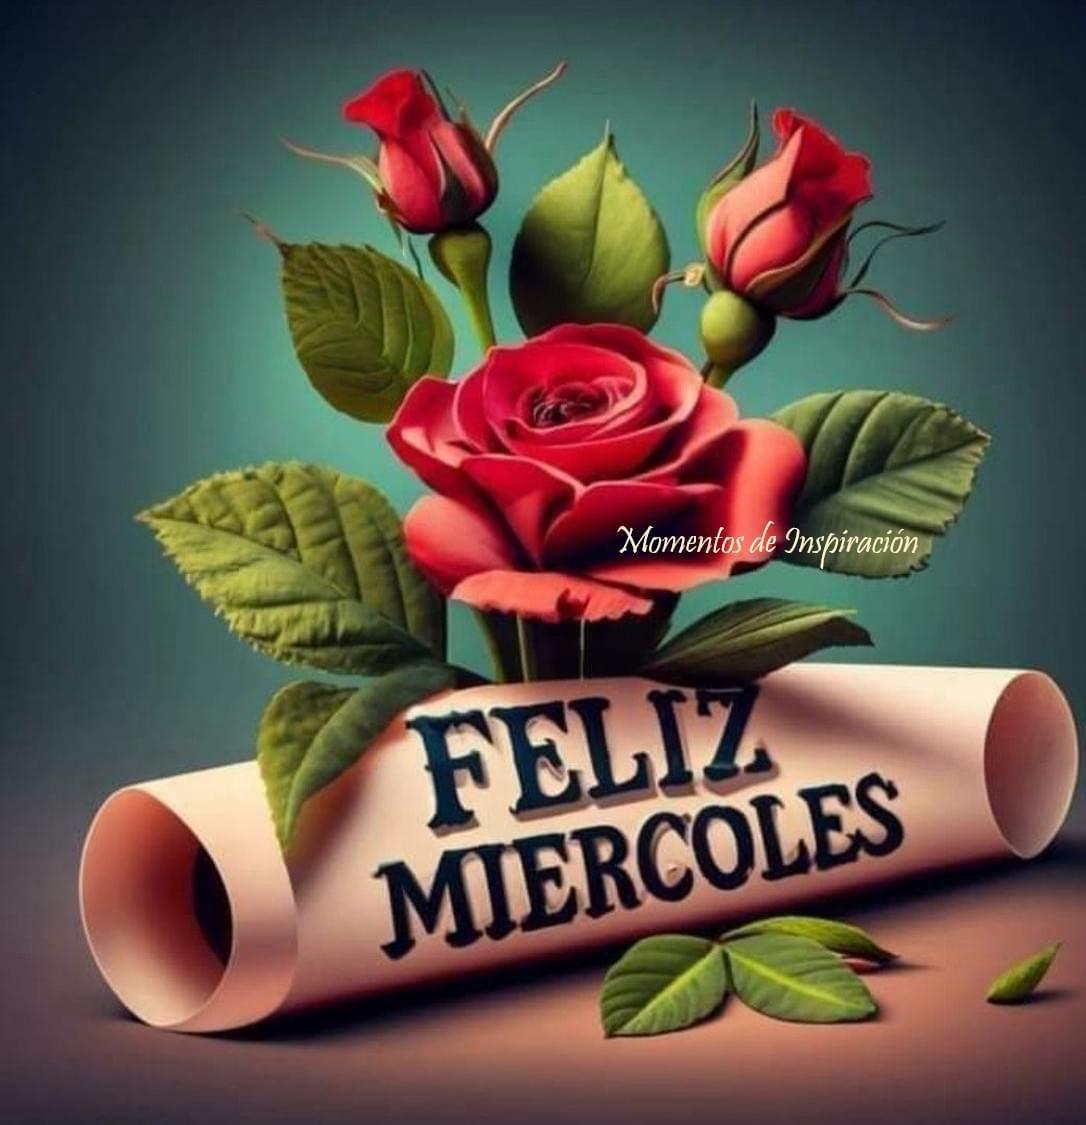 Les deseo a todos un día lleno de muchas alegrías y cosas buenas. #FelizMiércoles